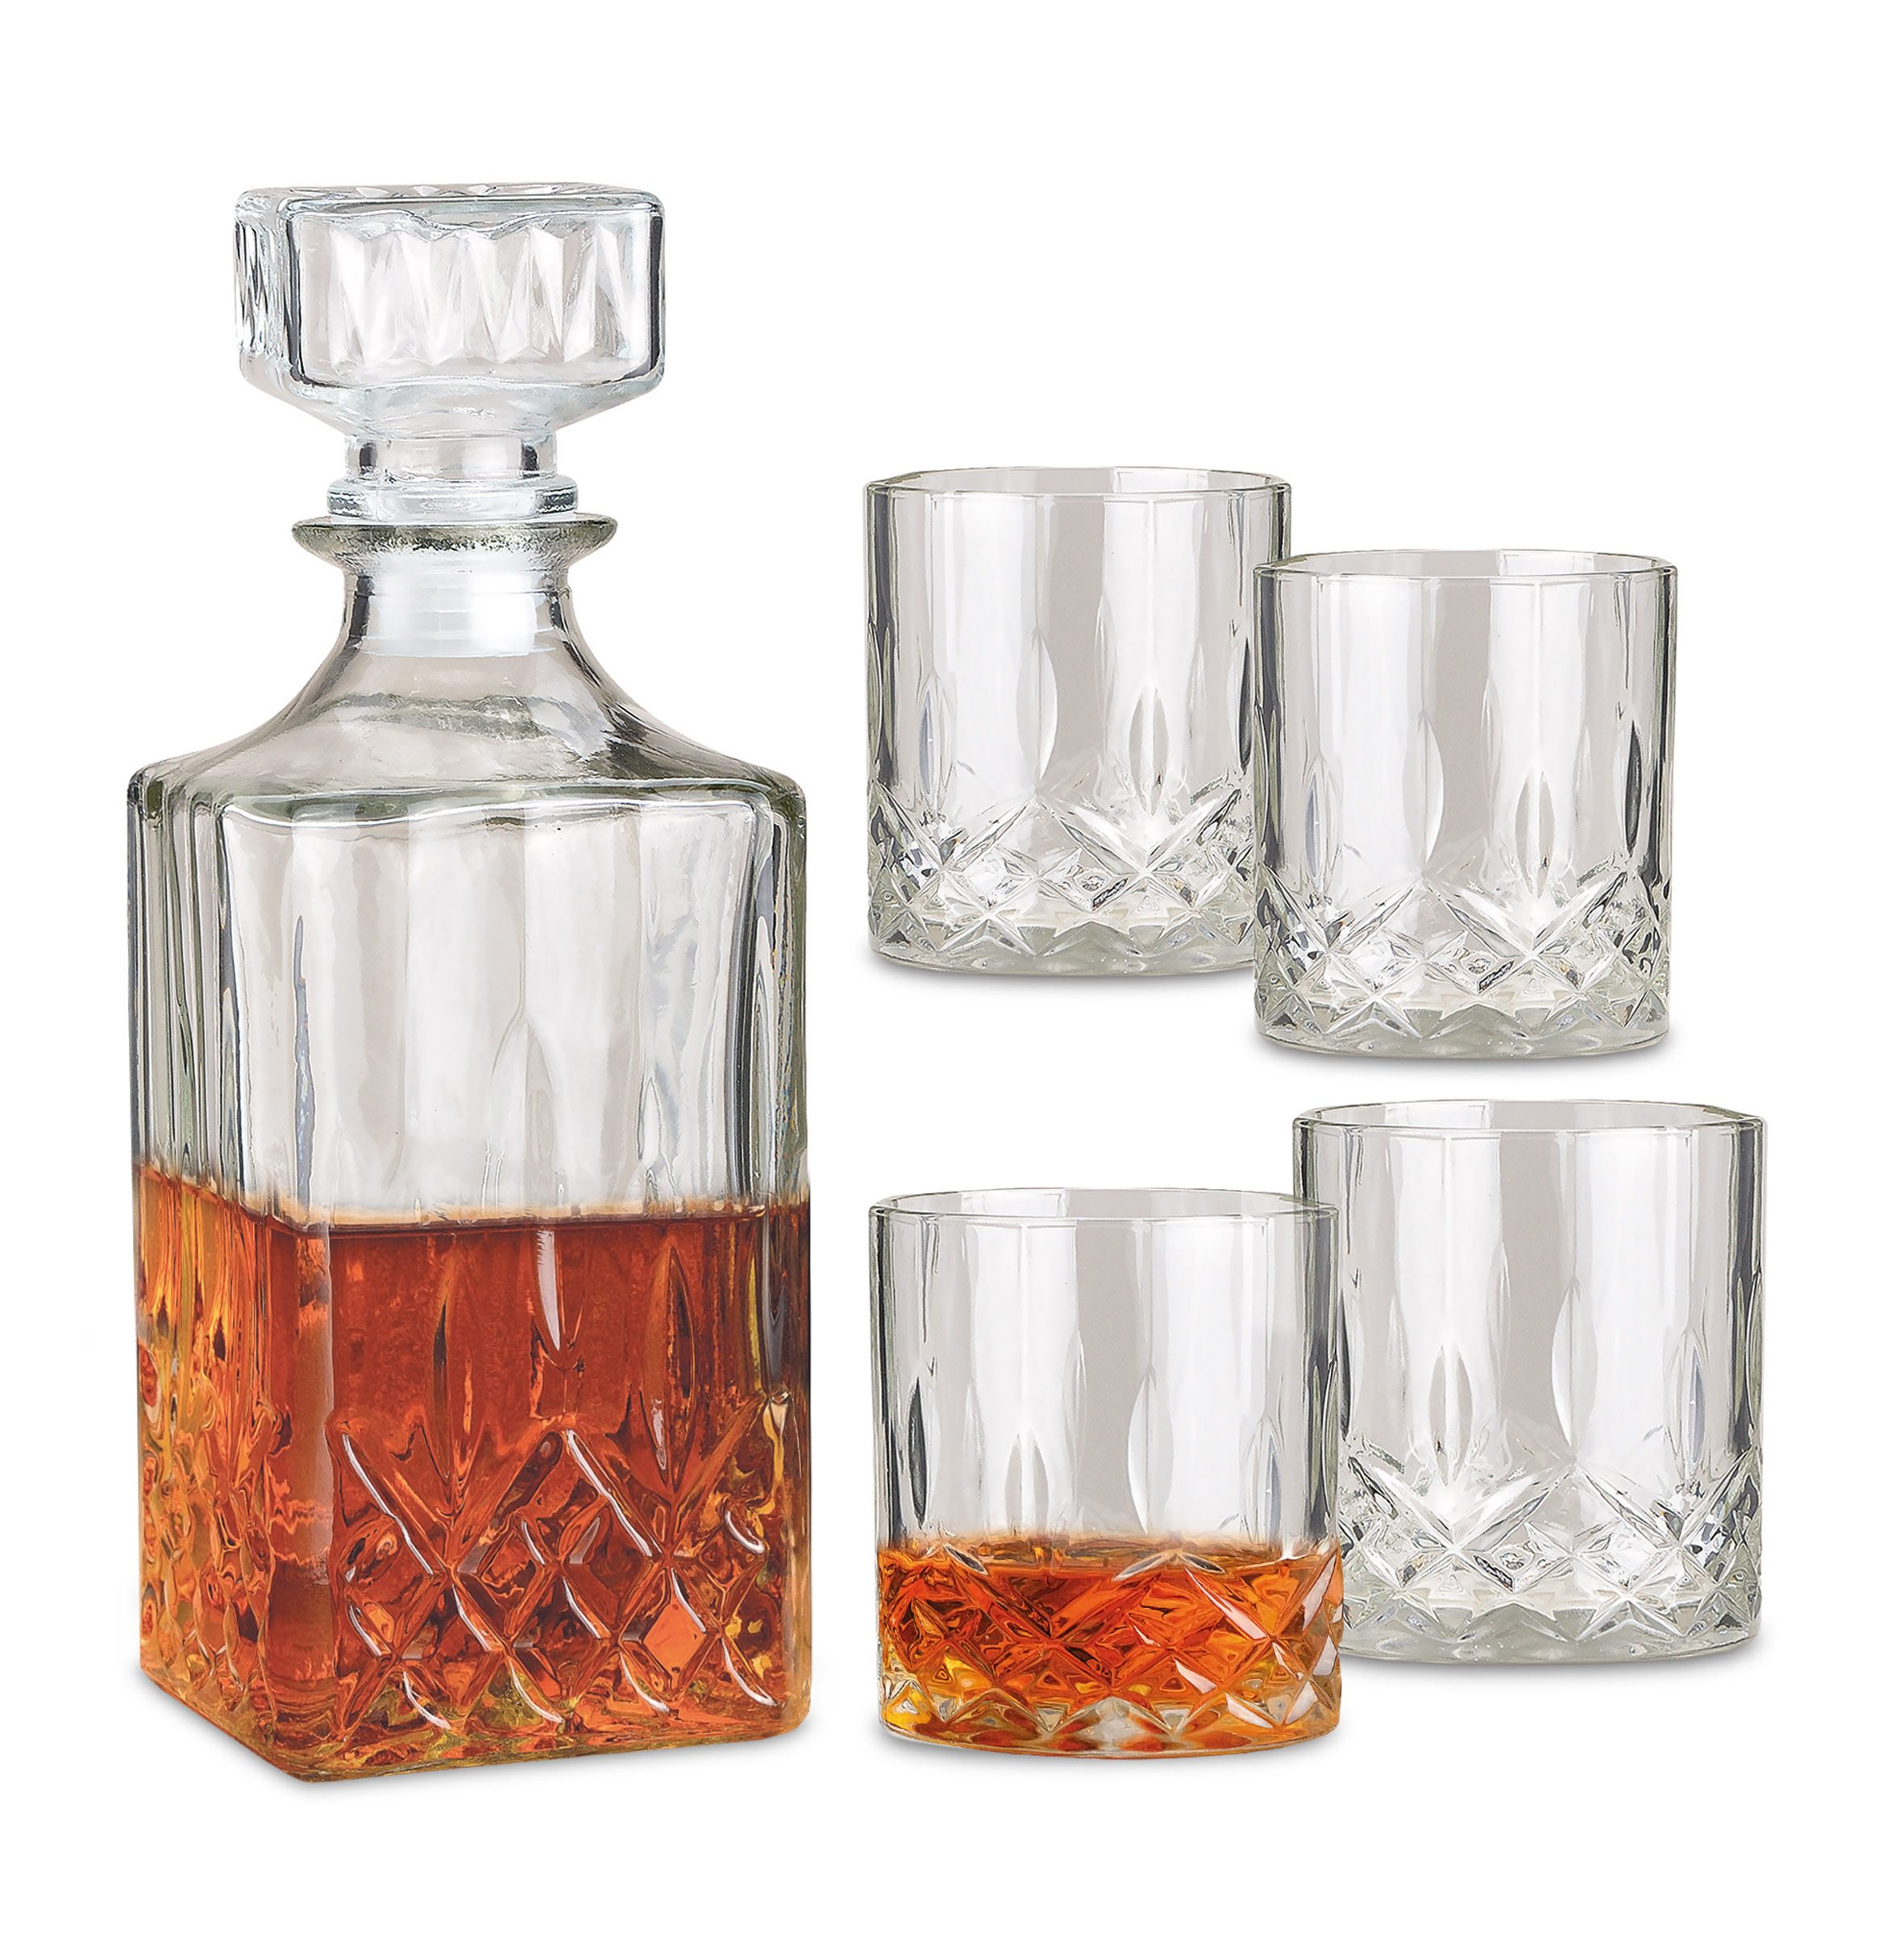 Woma Whiskyglas Whisky Glas Geschenk Set aus Kristallglas - 4 Gläser + 1 Karaffe, Kristallglas, Rum Dekanter mit Trinkglas